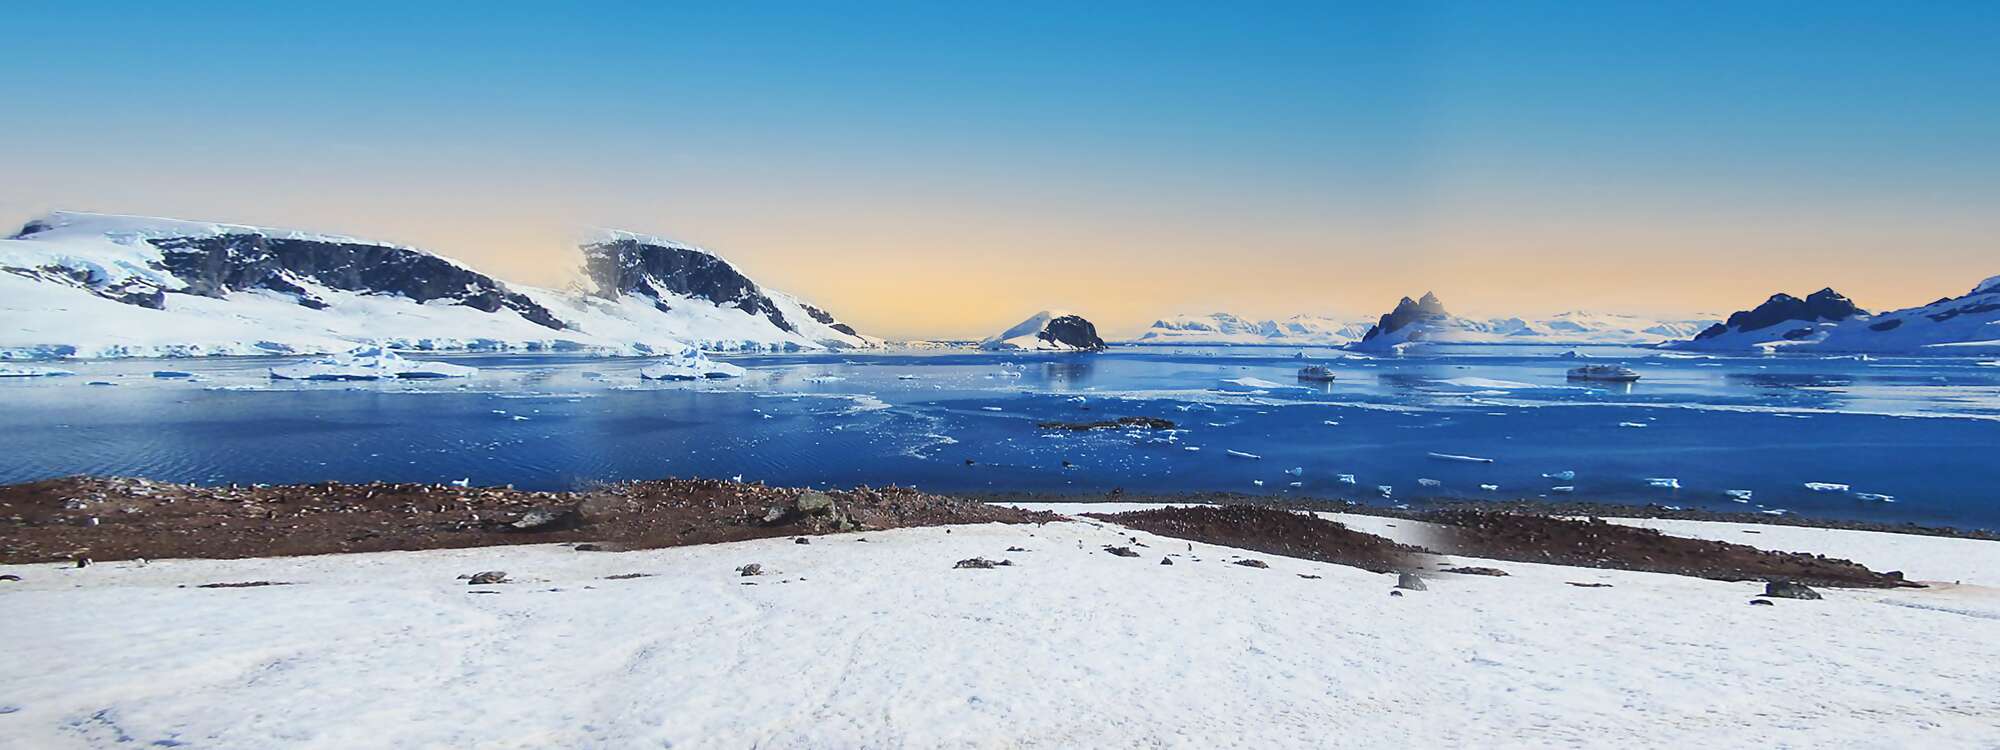 
Der Errera-Kanal erstreckt sich von Danco Island mit Rongé Island auf der linken Seite, Cuverville Island in der Mitte und der Arctowski-Halbinsel auf dem antarktischen Festland auf der rechten Seite - in der Antarktis